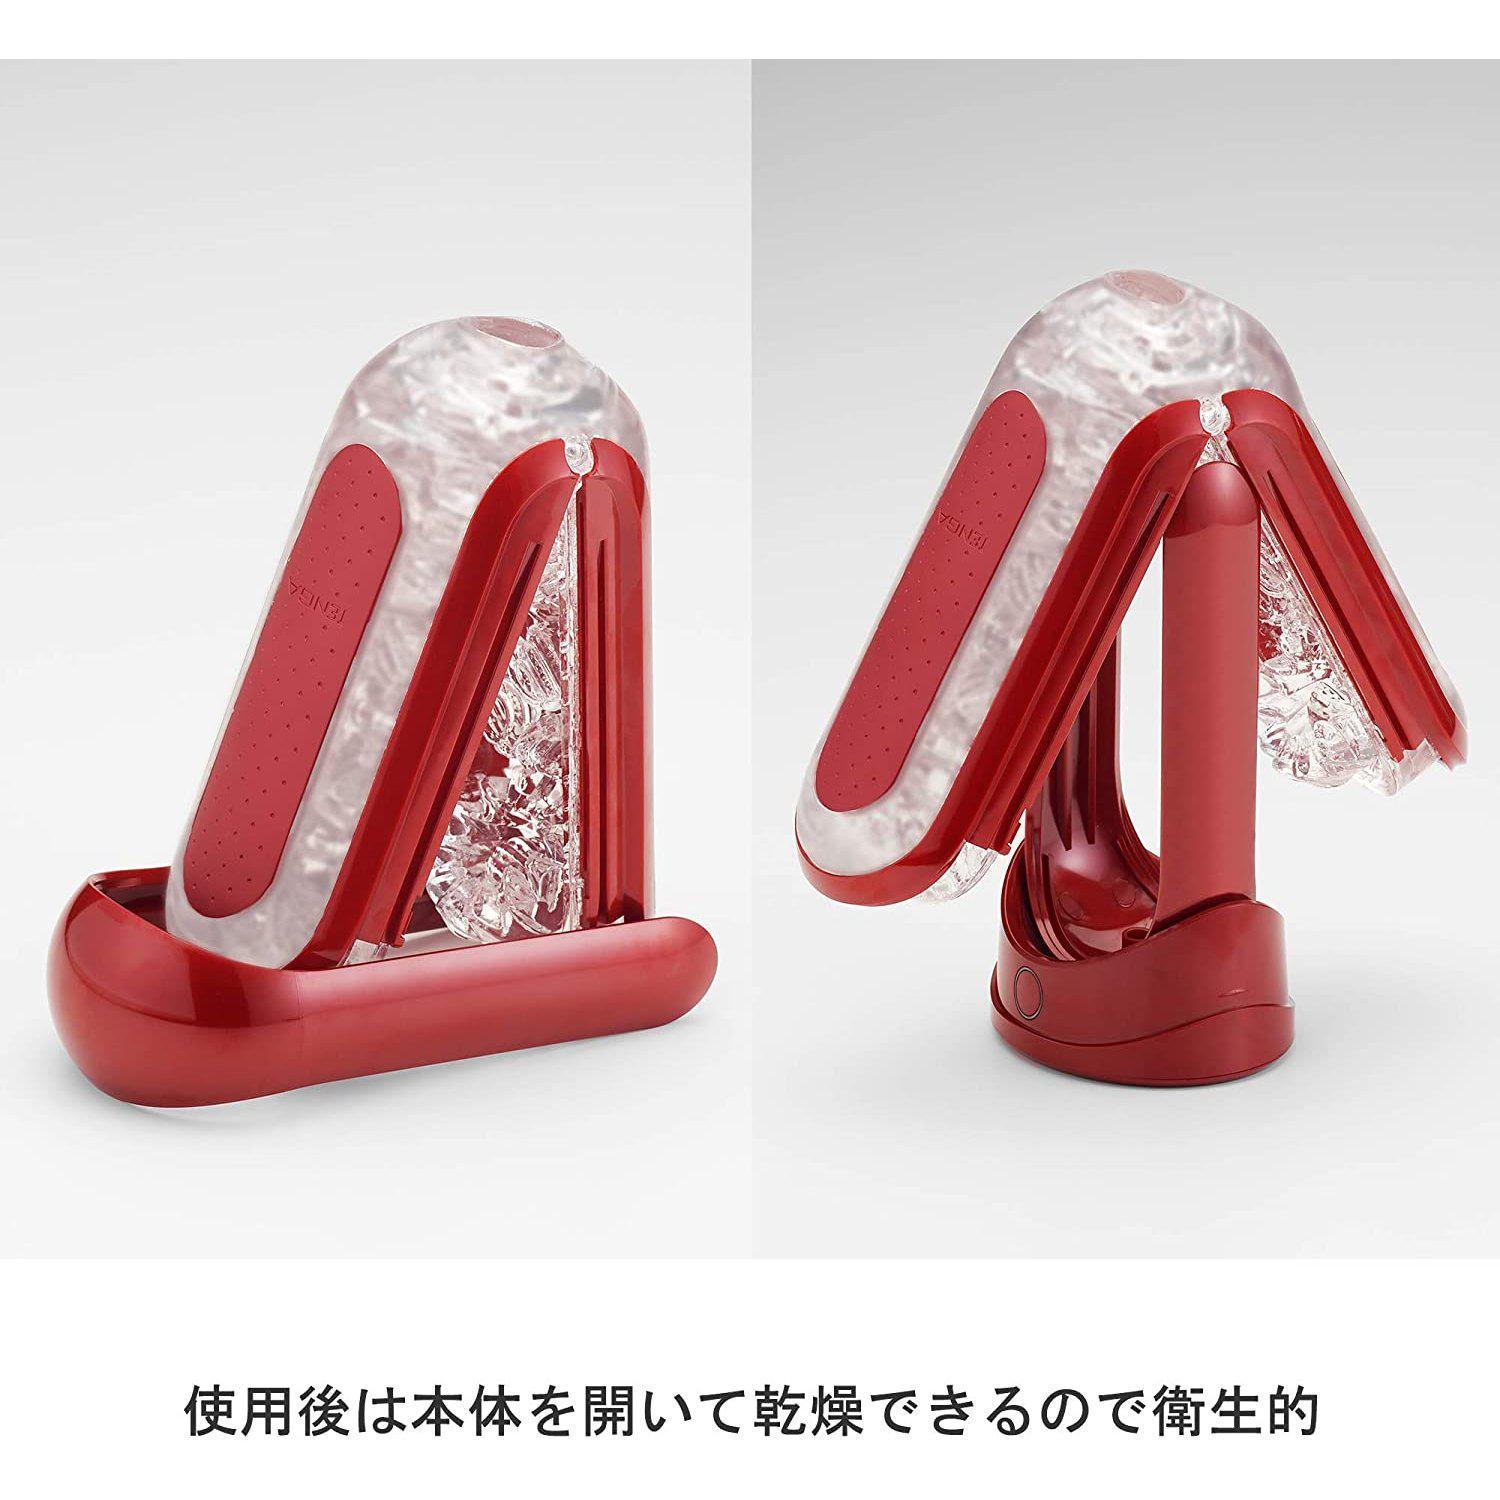 Tenga Flip ZERO RED and Warmer Set-TENGA-TENGA 香港網上專門店 - 專營 TENGA 飛機杯及潤滑劑